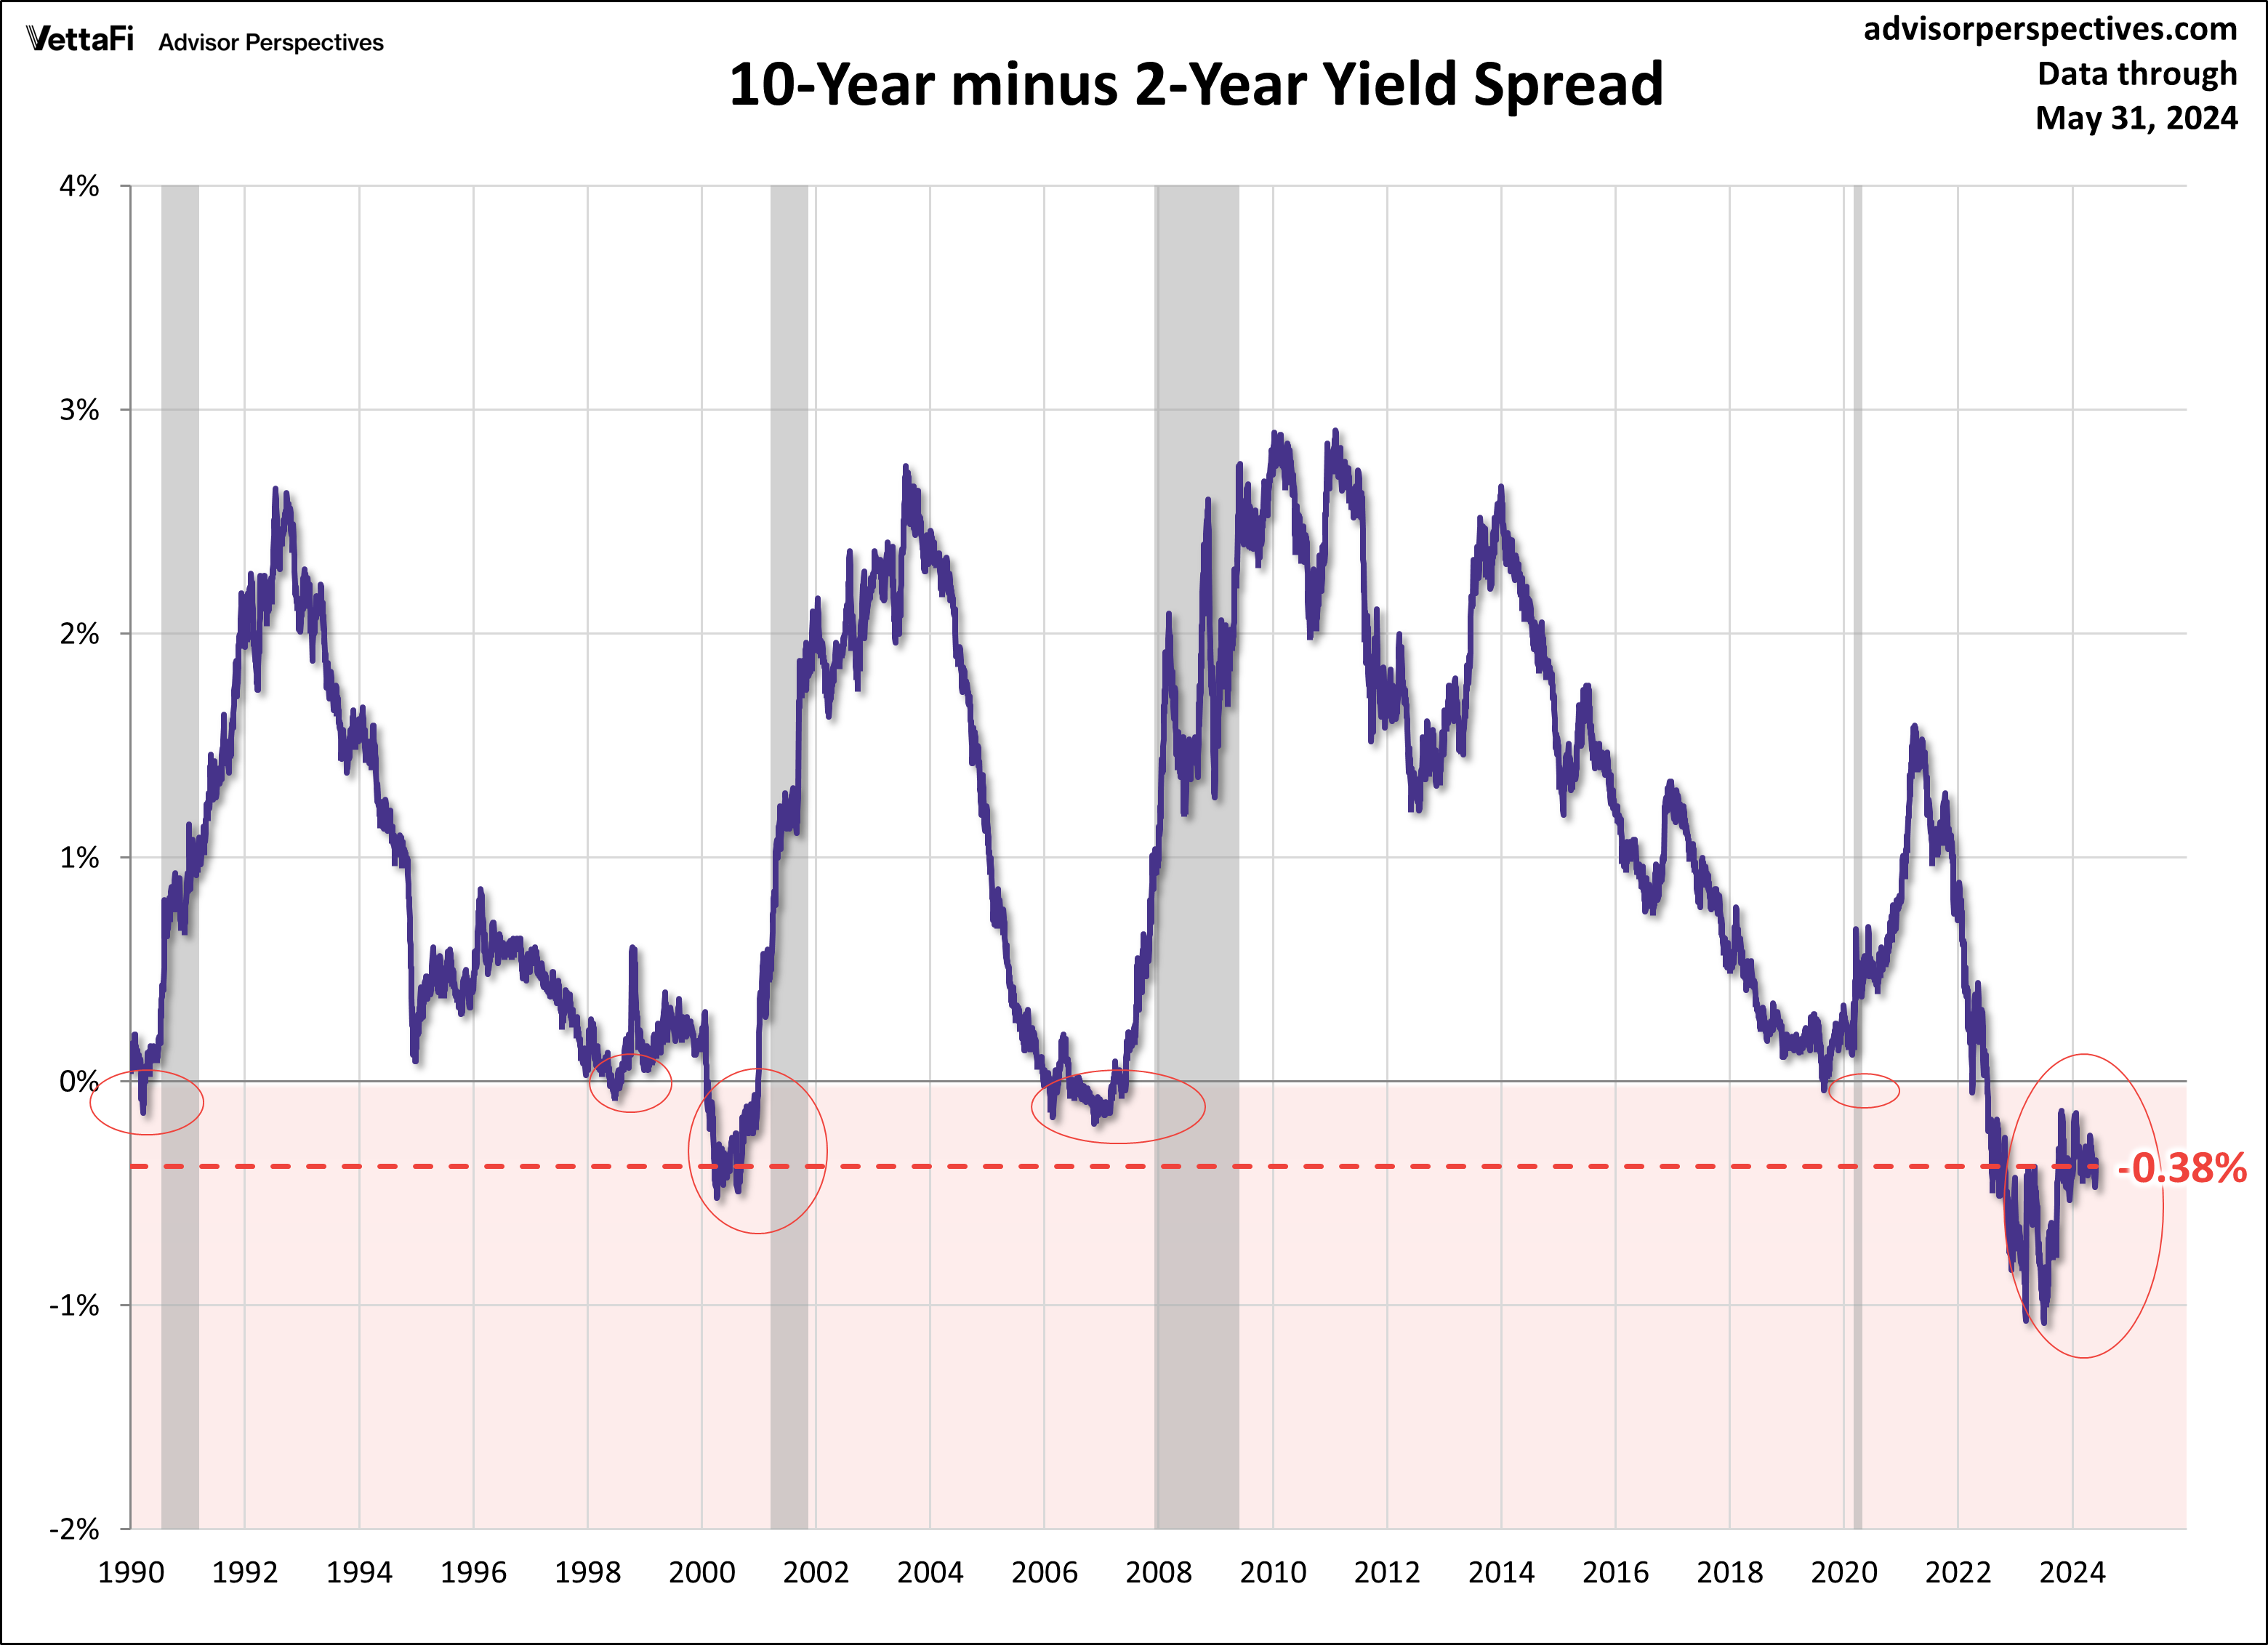 Treasury Yields Snapshot: May 31, 2024 | ETF Trends